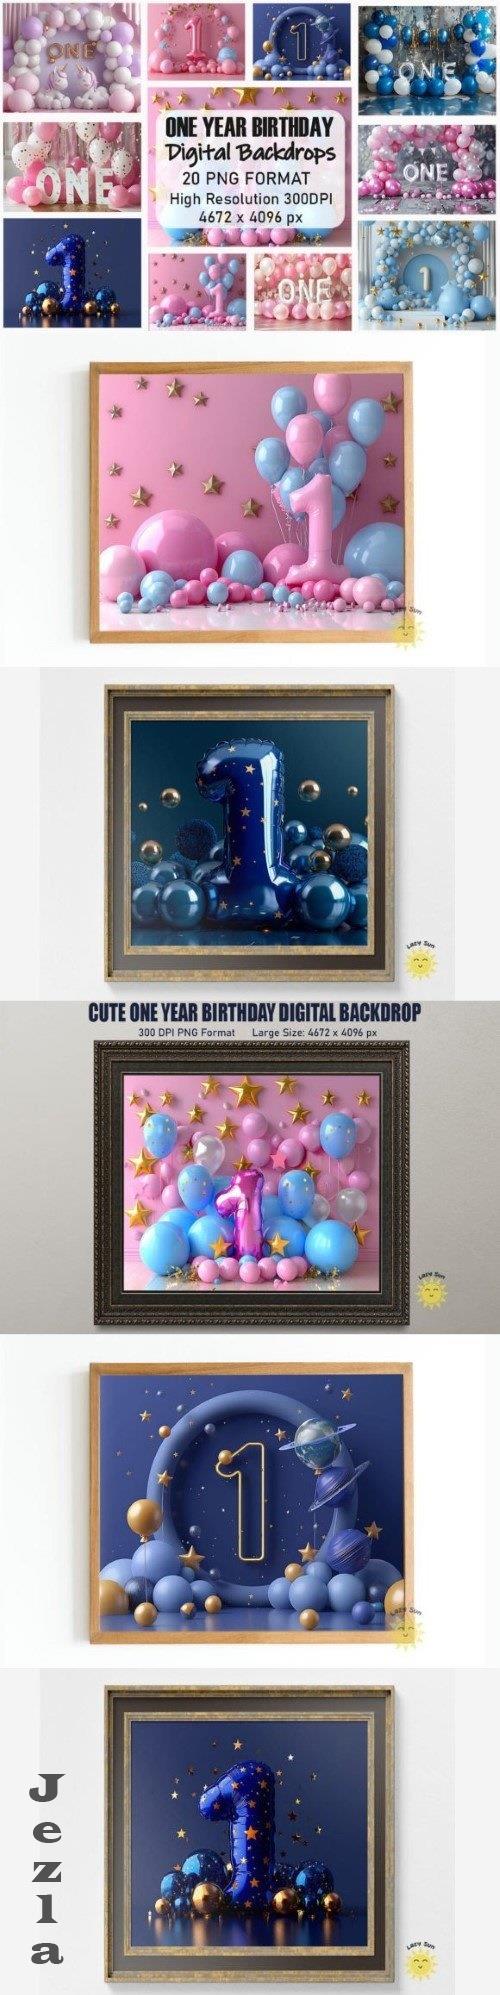 Cute One Year Birthday Digital Backdrops